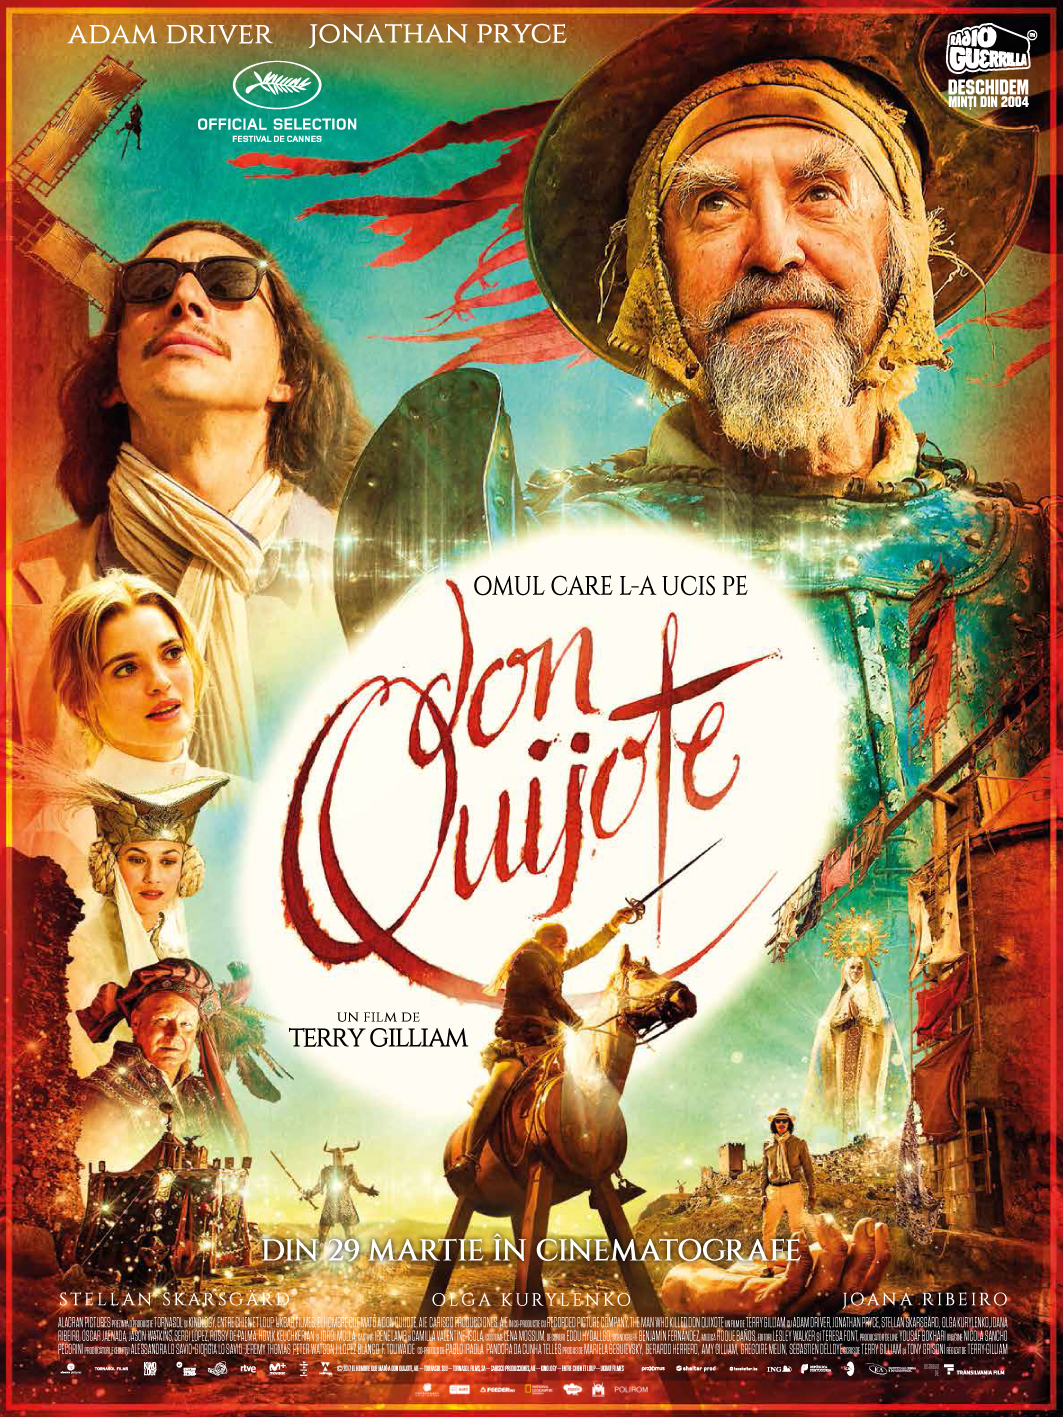 Omul care l-a ucis pe Don Quixote